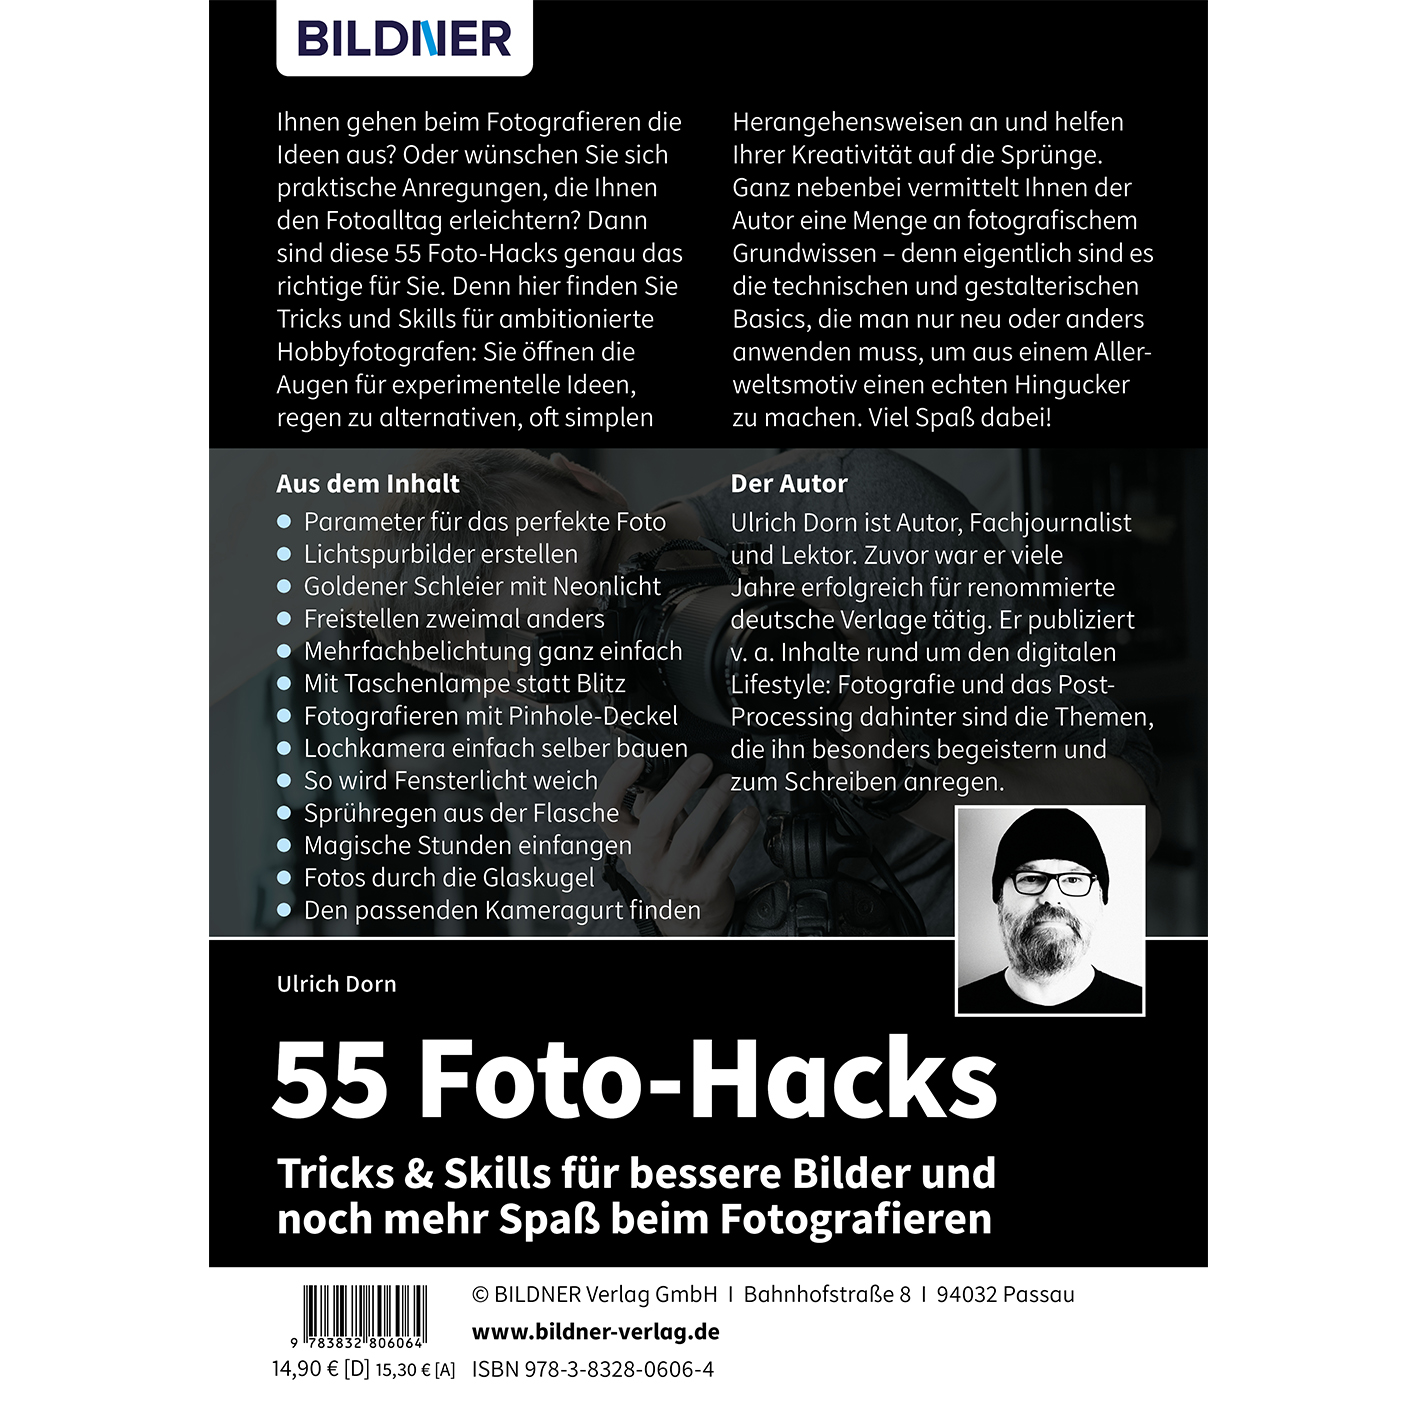 Foto-Hacks Fotografieren beim noch & für Skills bessere und Bilder – Spaß mehr 55 Tricks